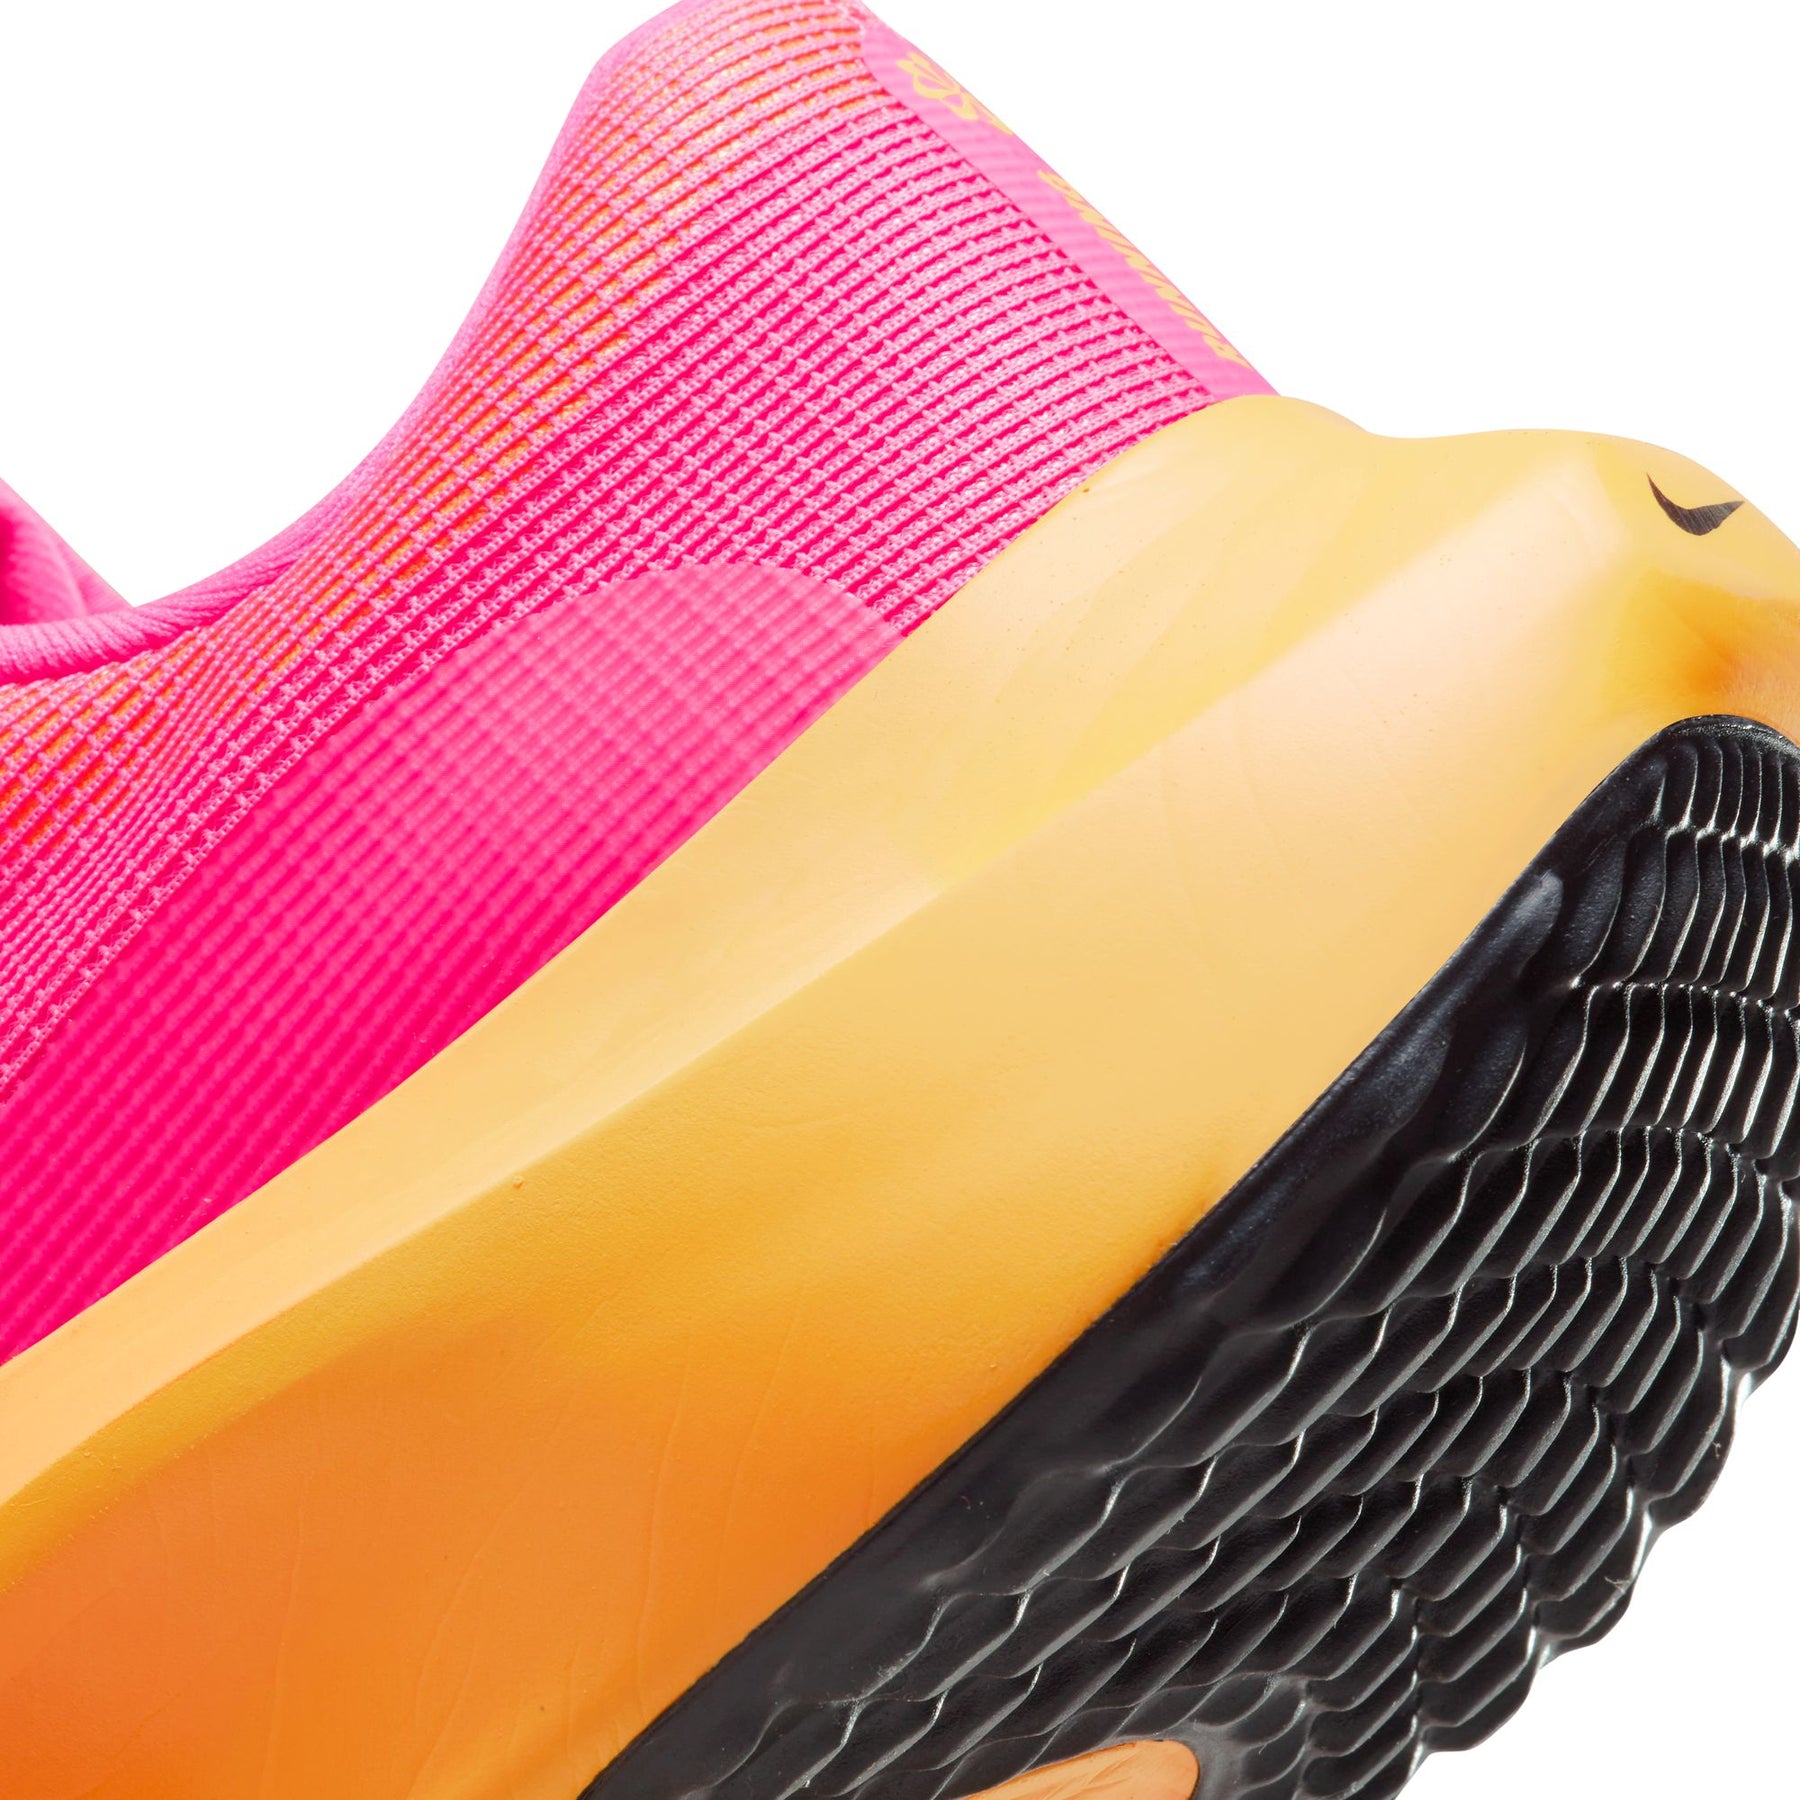 Nike Zoom Fly 5 (D Width)- Hyper Pink/ Black-Laser Orange (Mens)